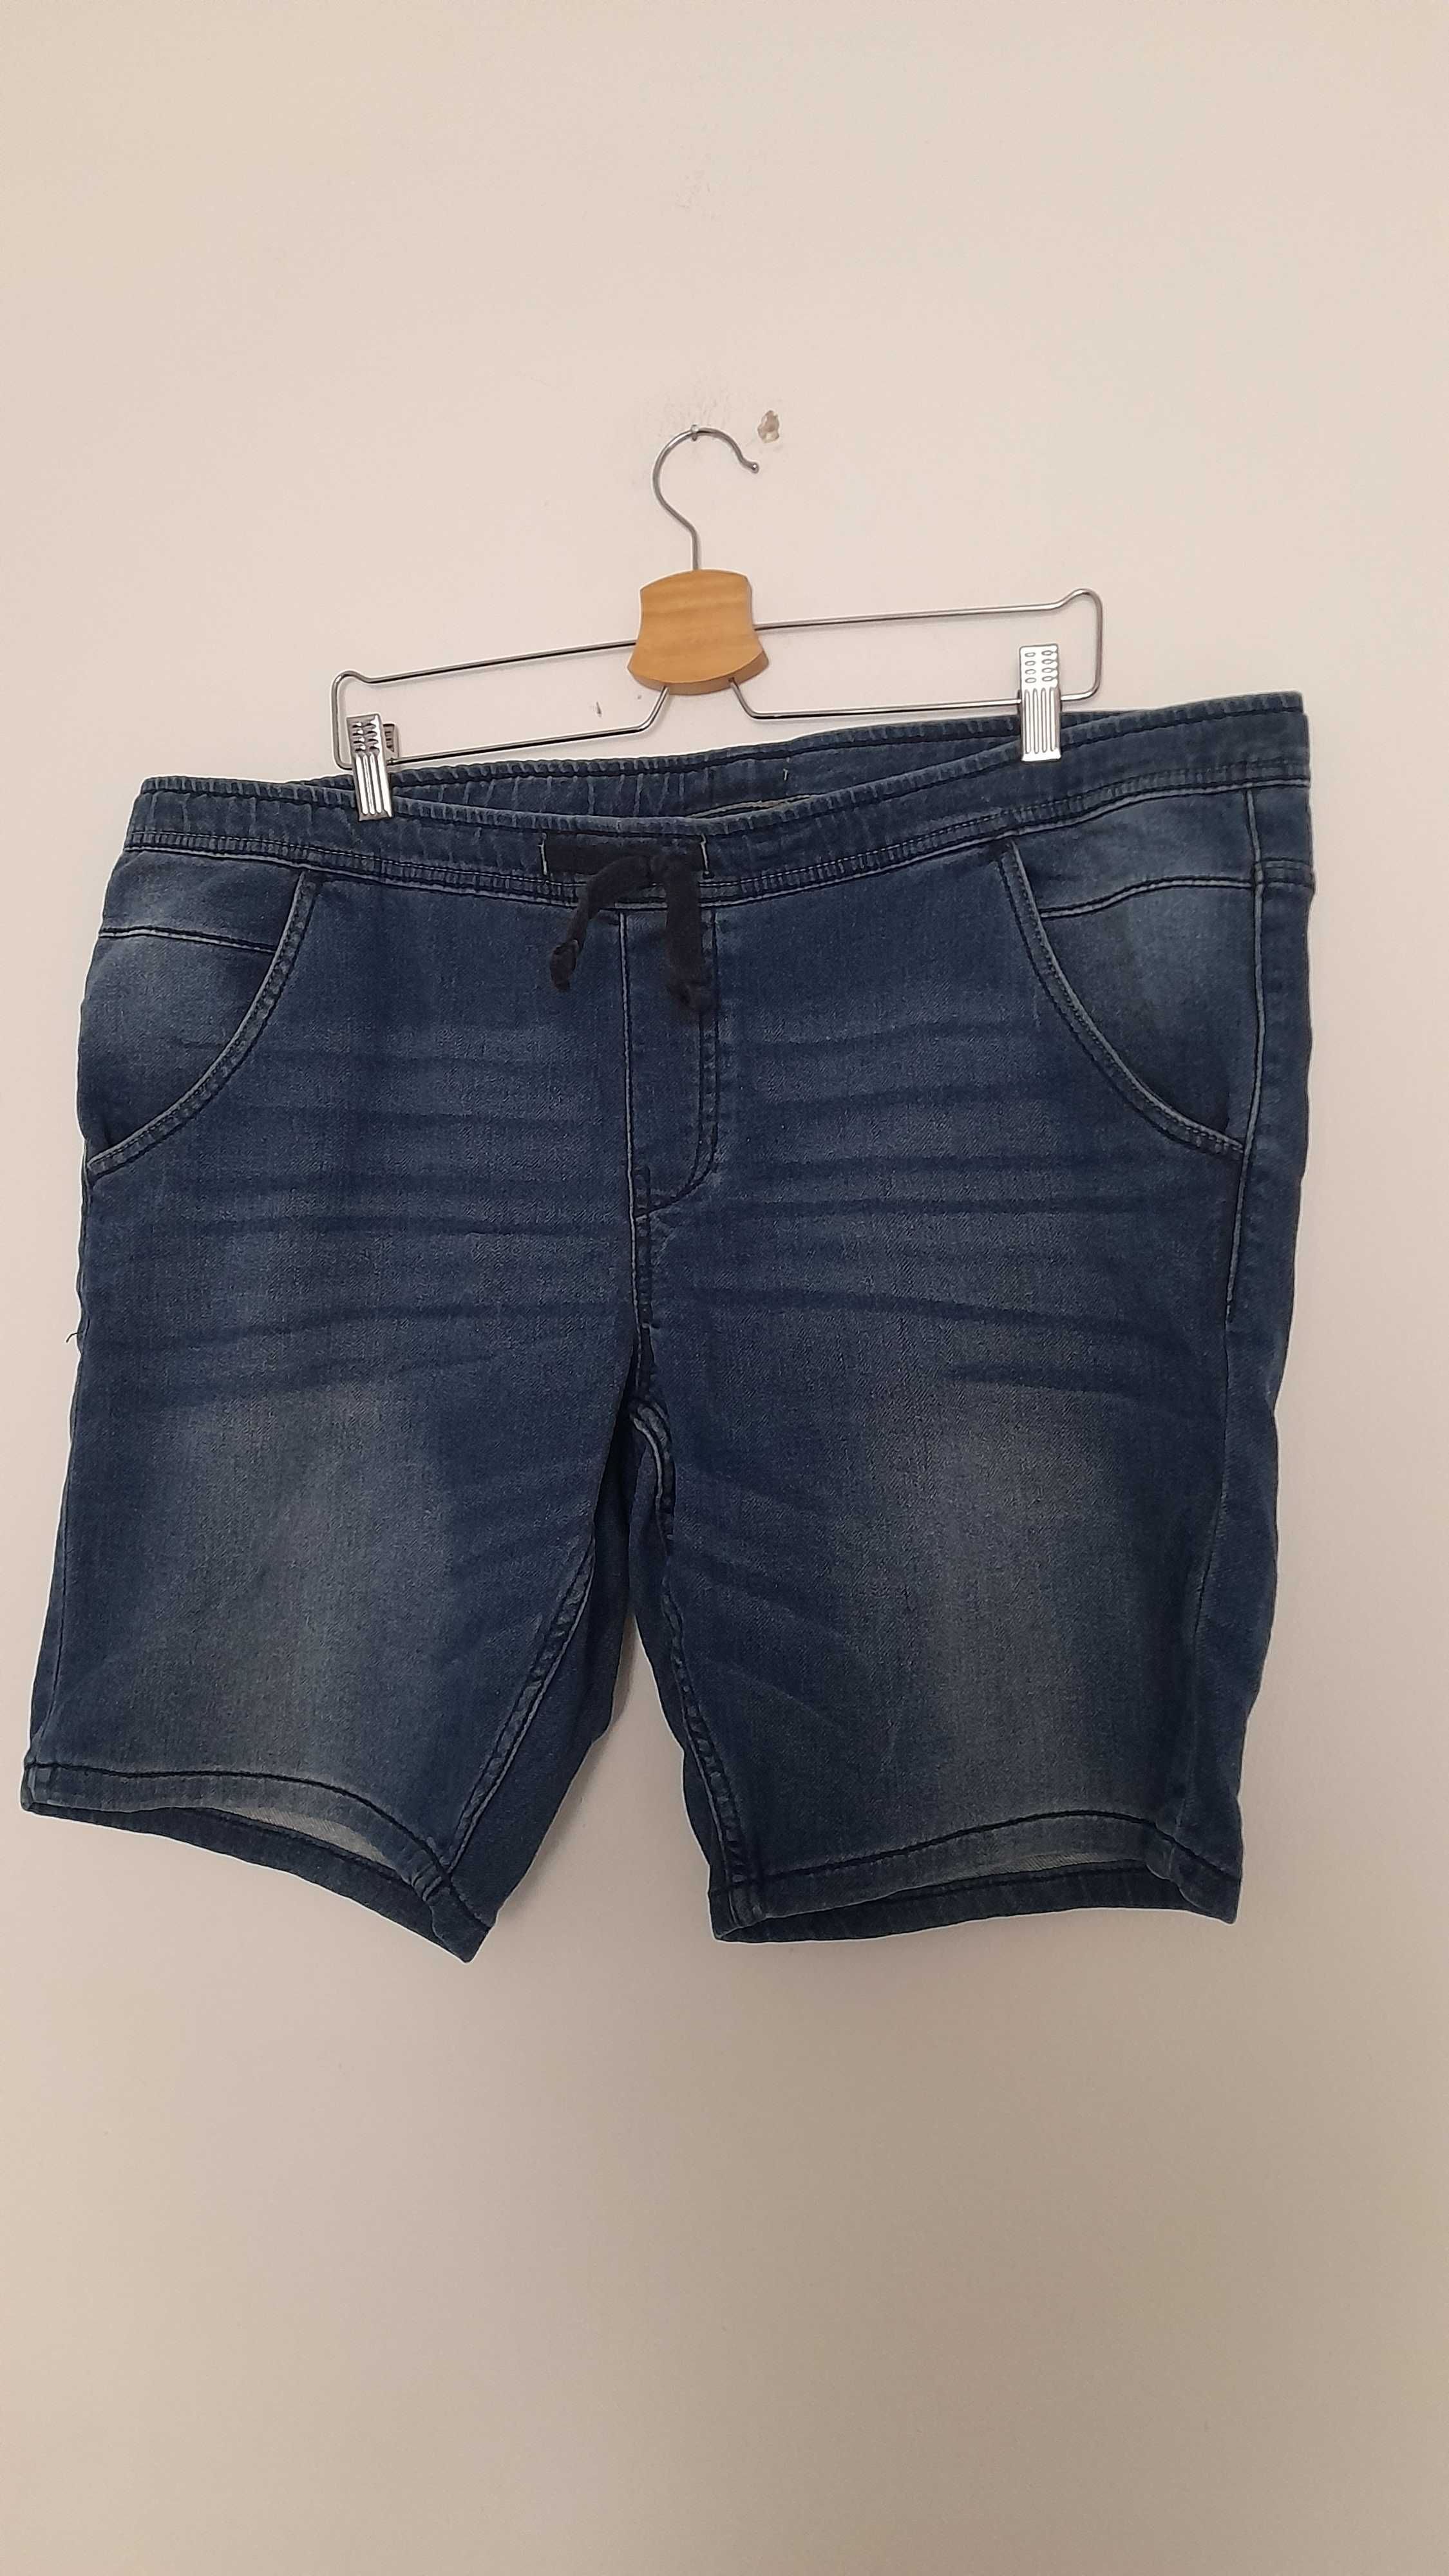 Niebieskie elastyczne spodenki męskie ala jeansowe bawełniane 52